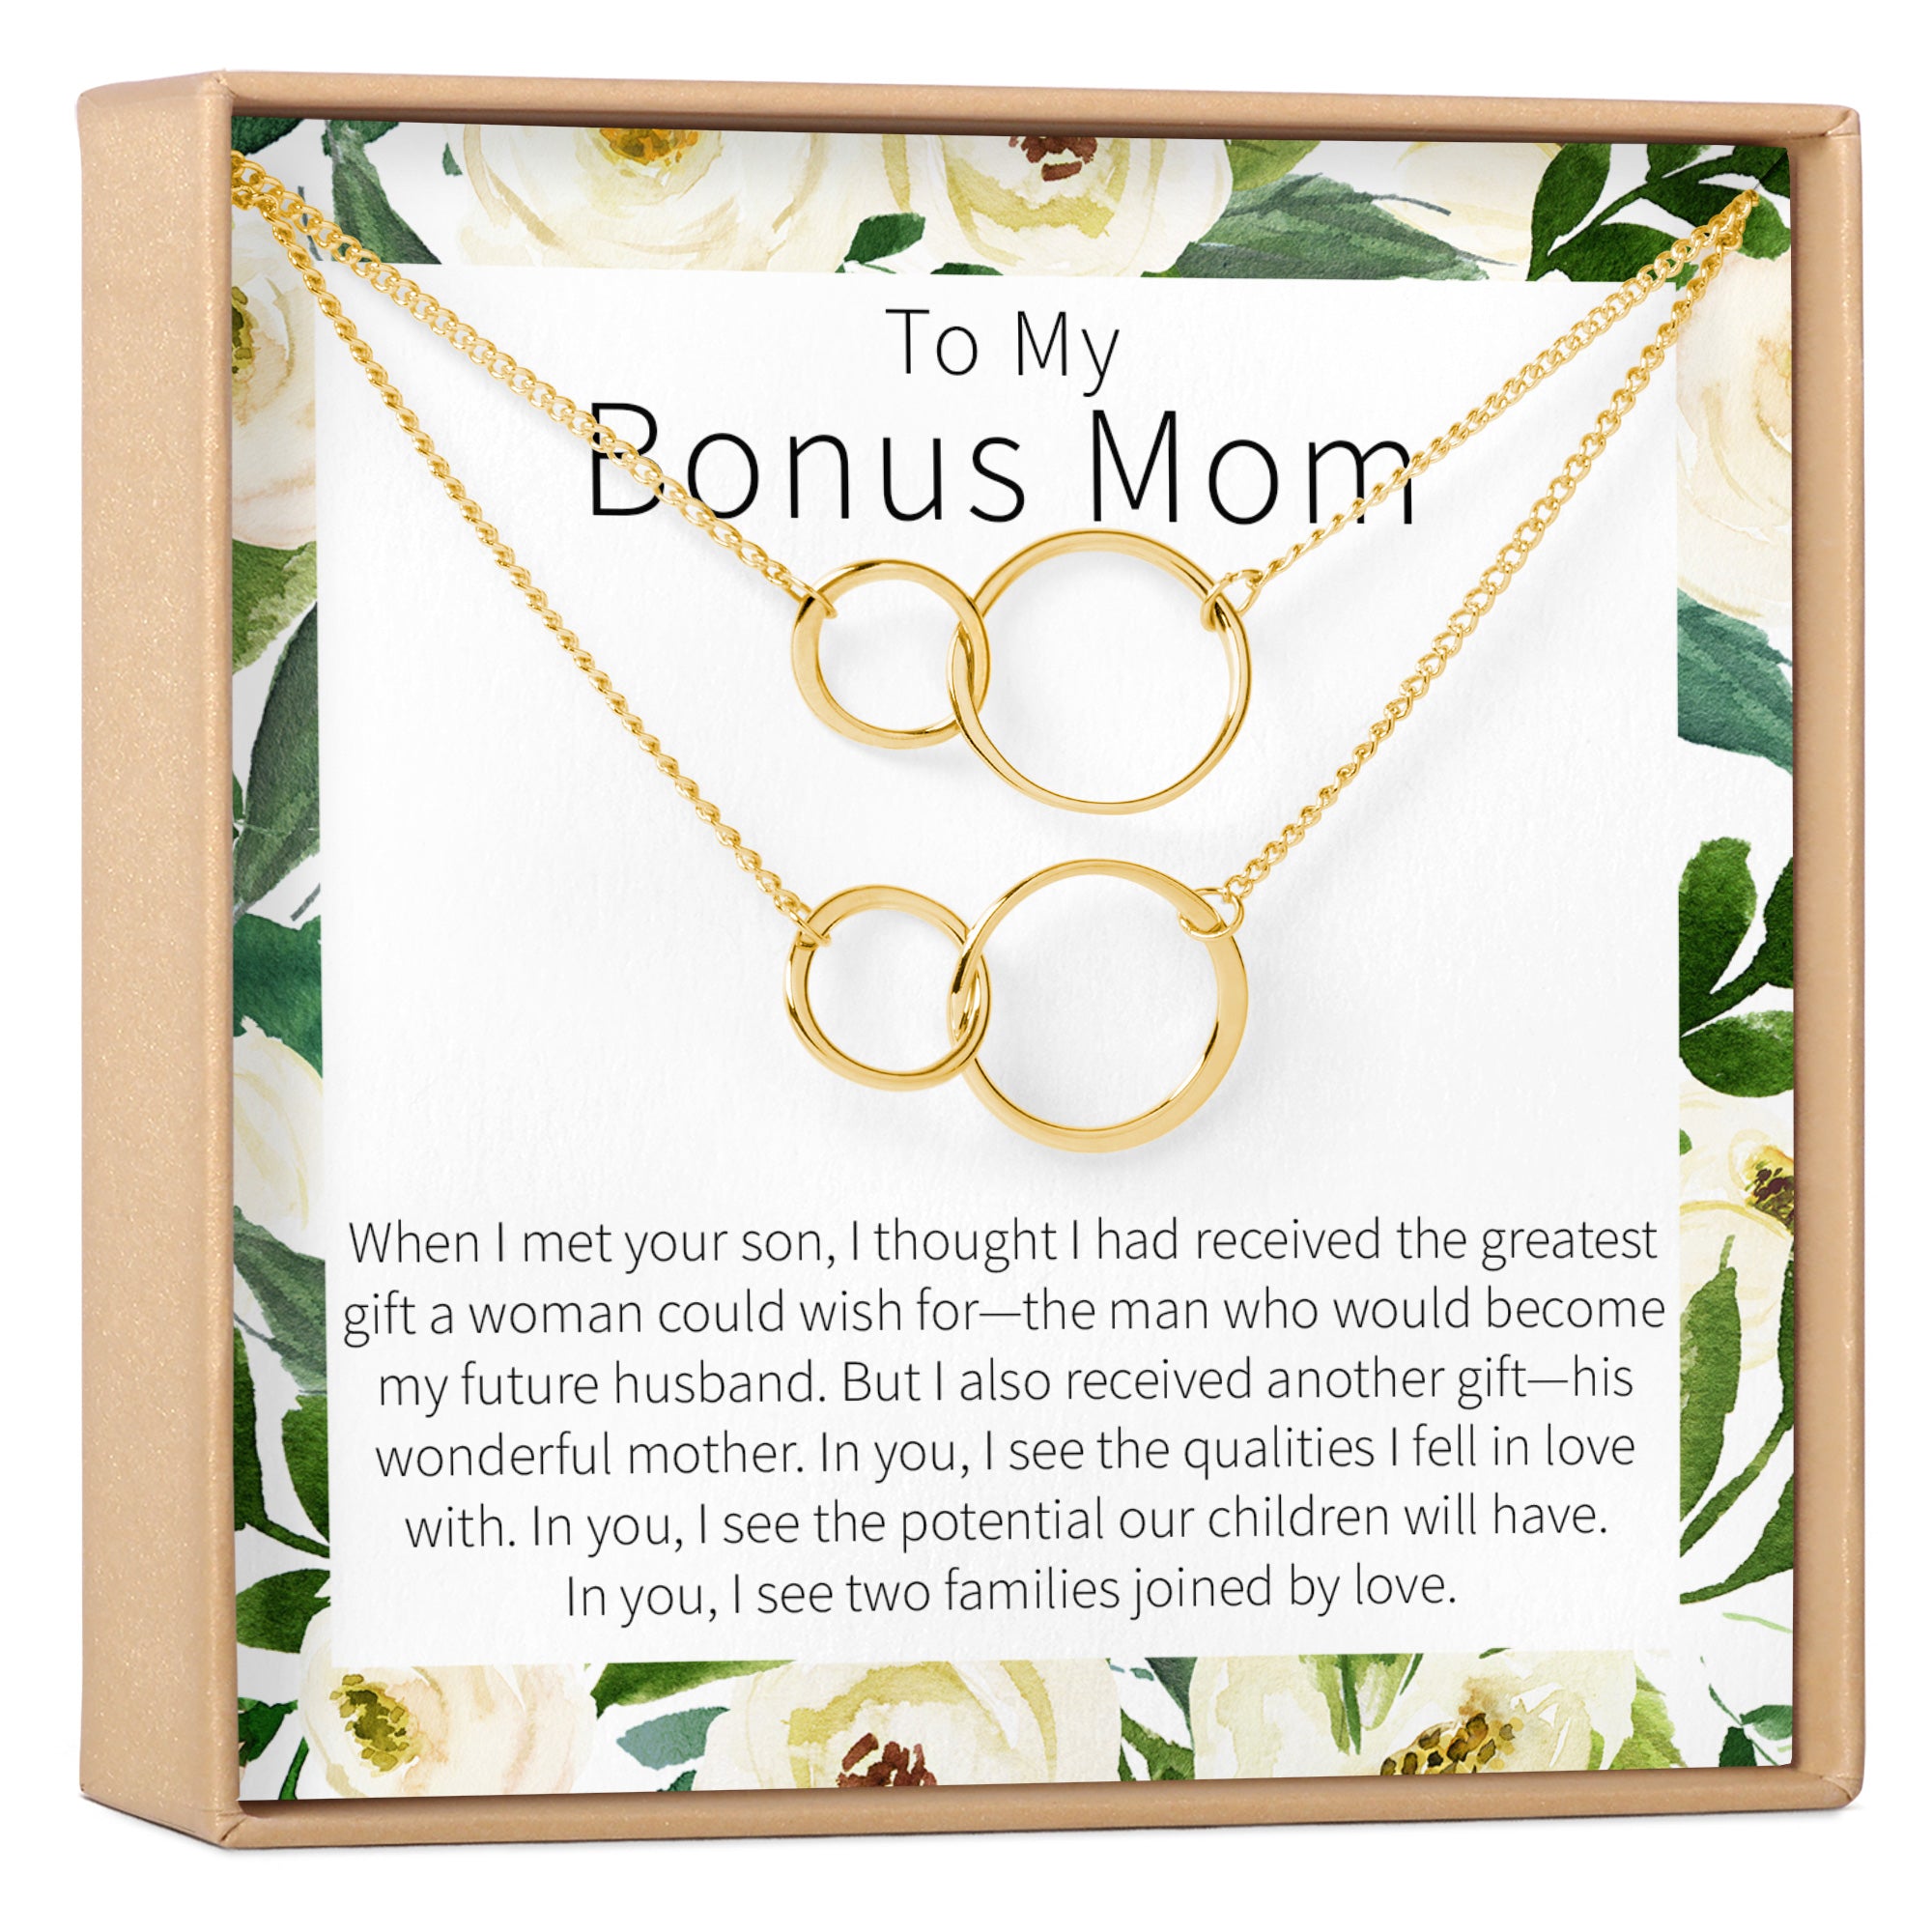 Gifts for Bonus Mom from Son, Daughter - Best Bonus, Step Mom Ever